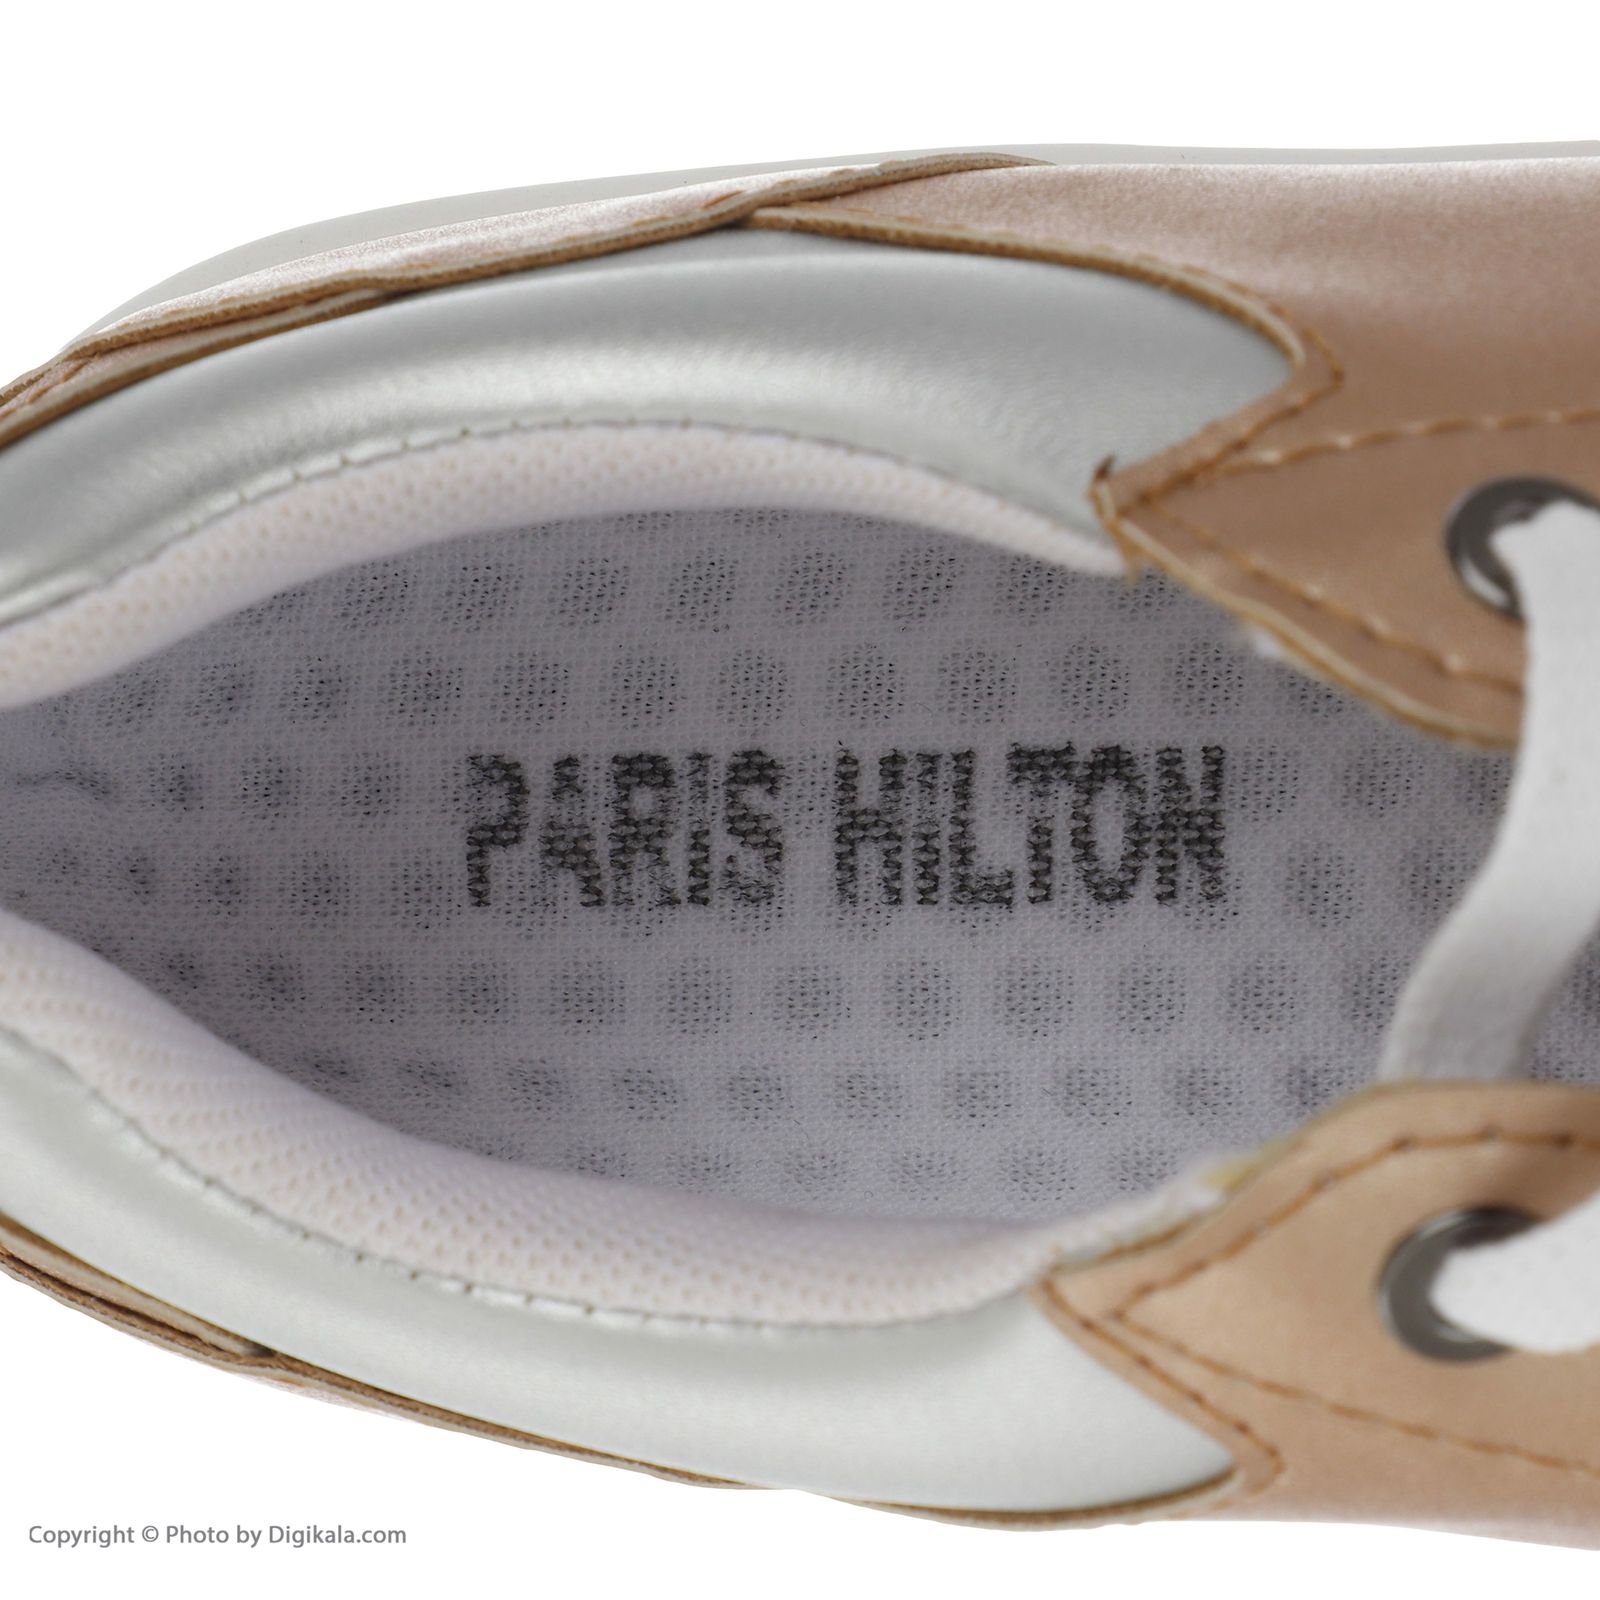 کفش روزمره زنانه پاریس هیلتون مدل psw21667 رنگ مسی -  - 6